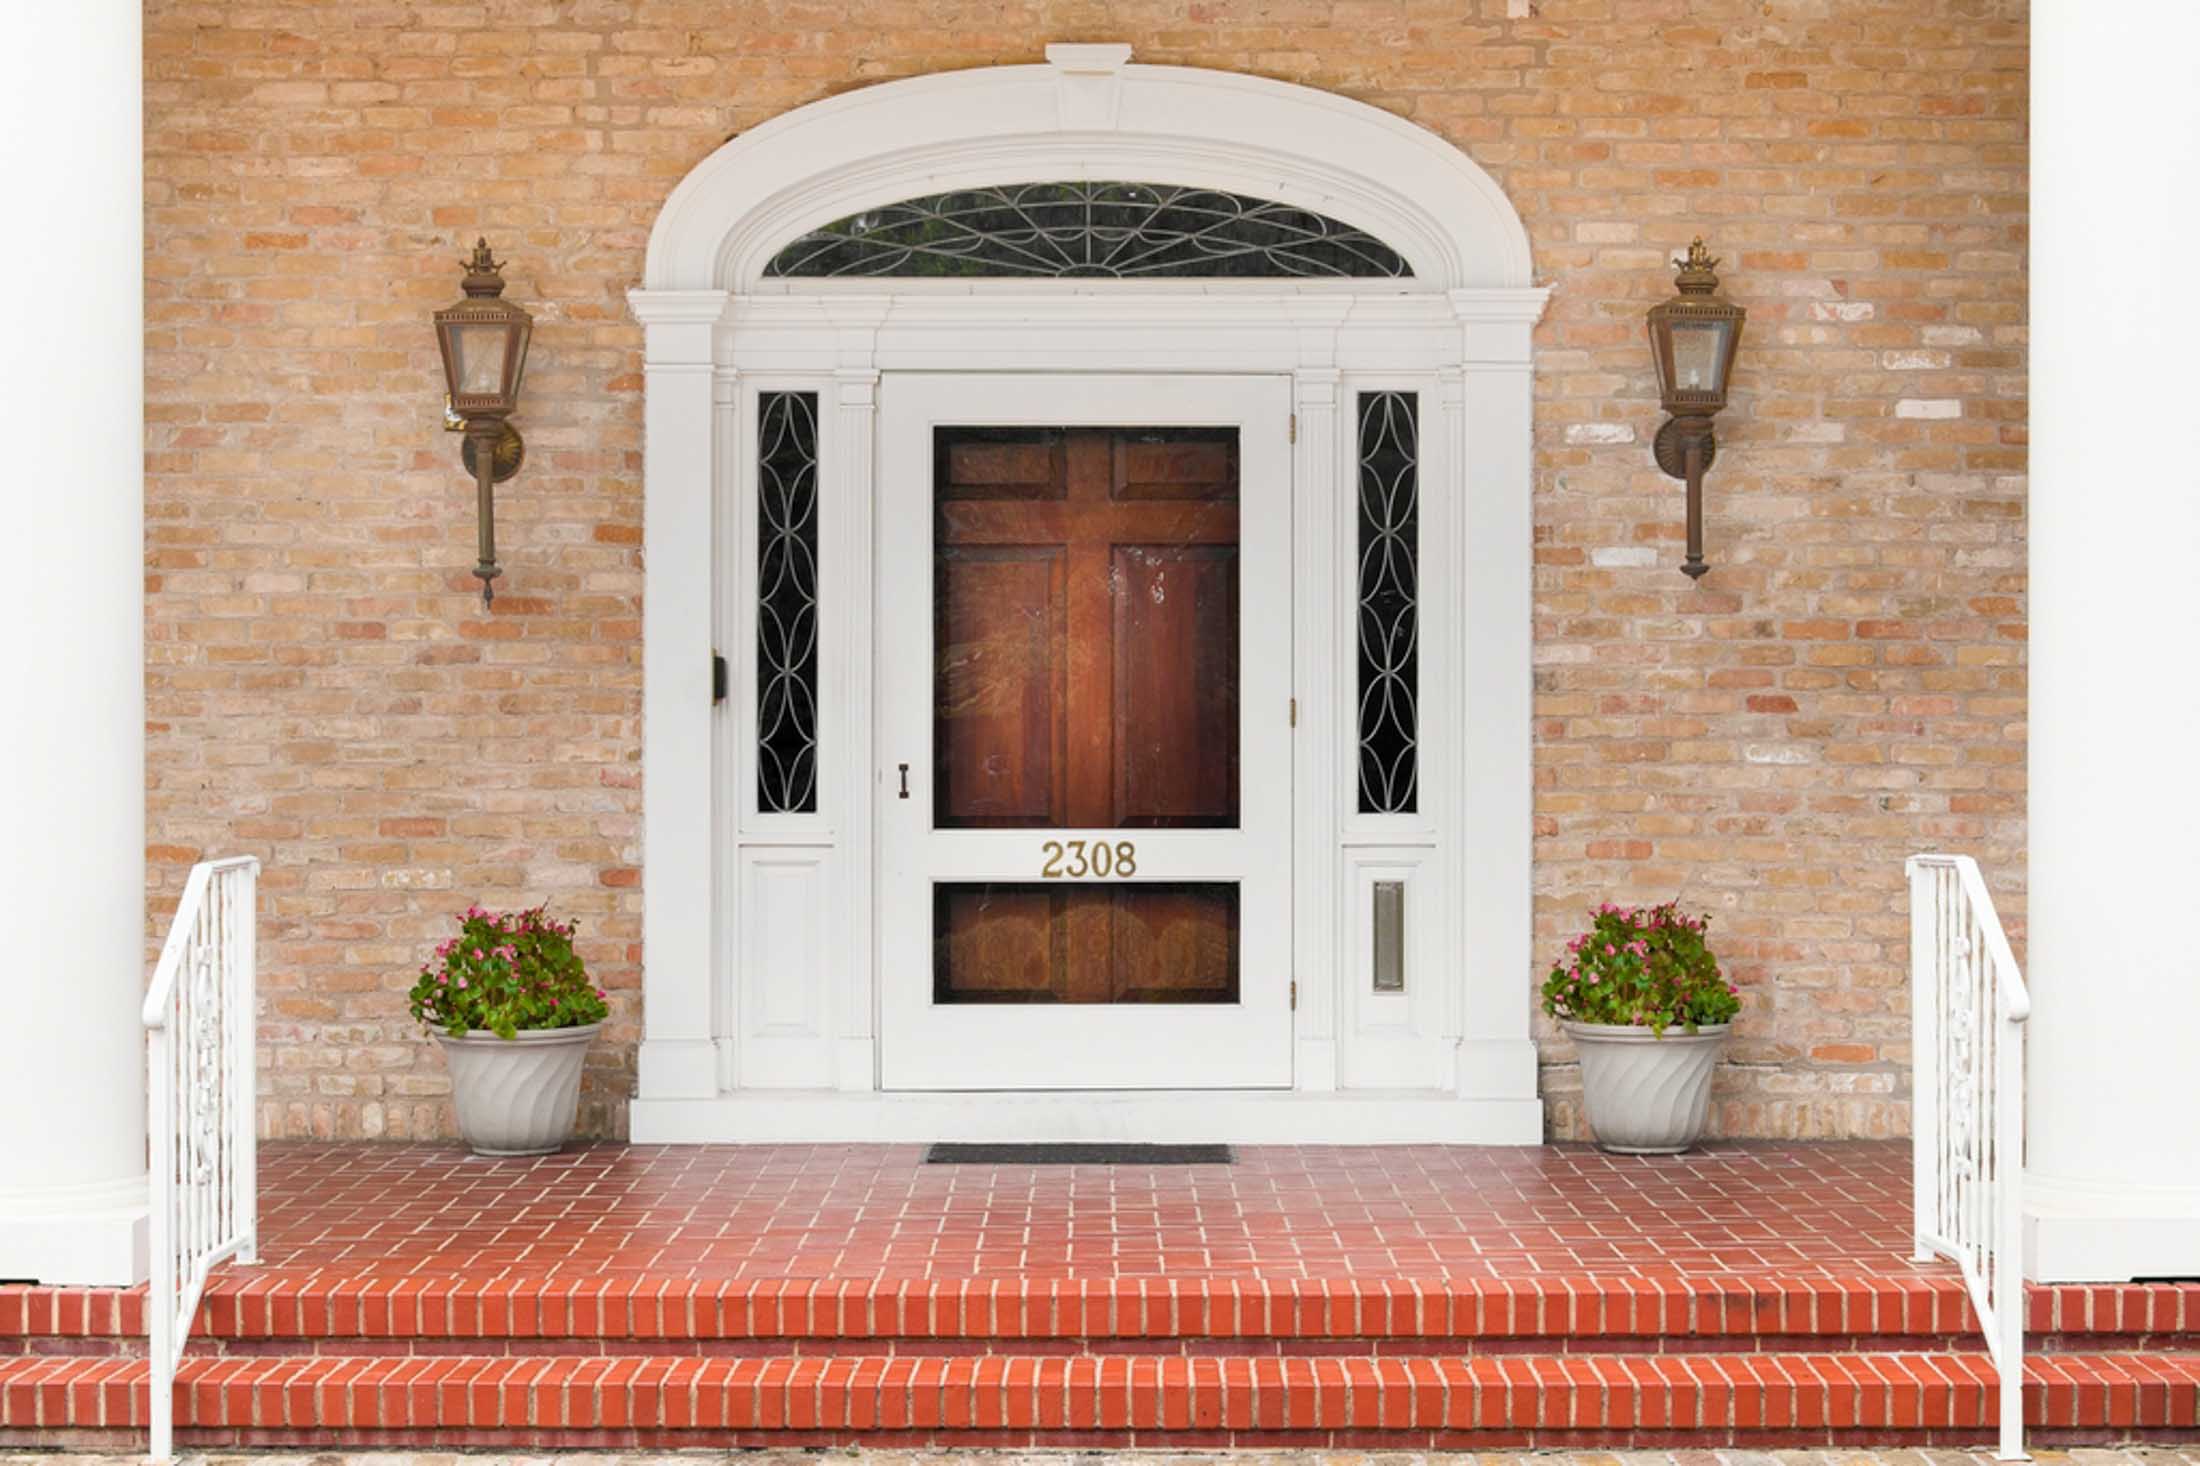 2308 Woodlawn Blvd - Exterior of Estate Front Door